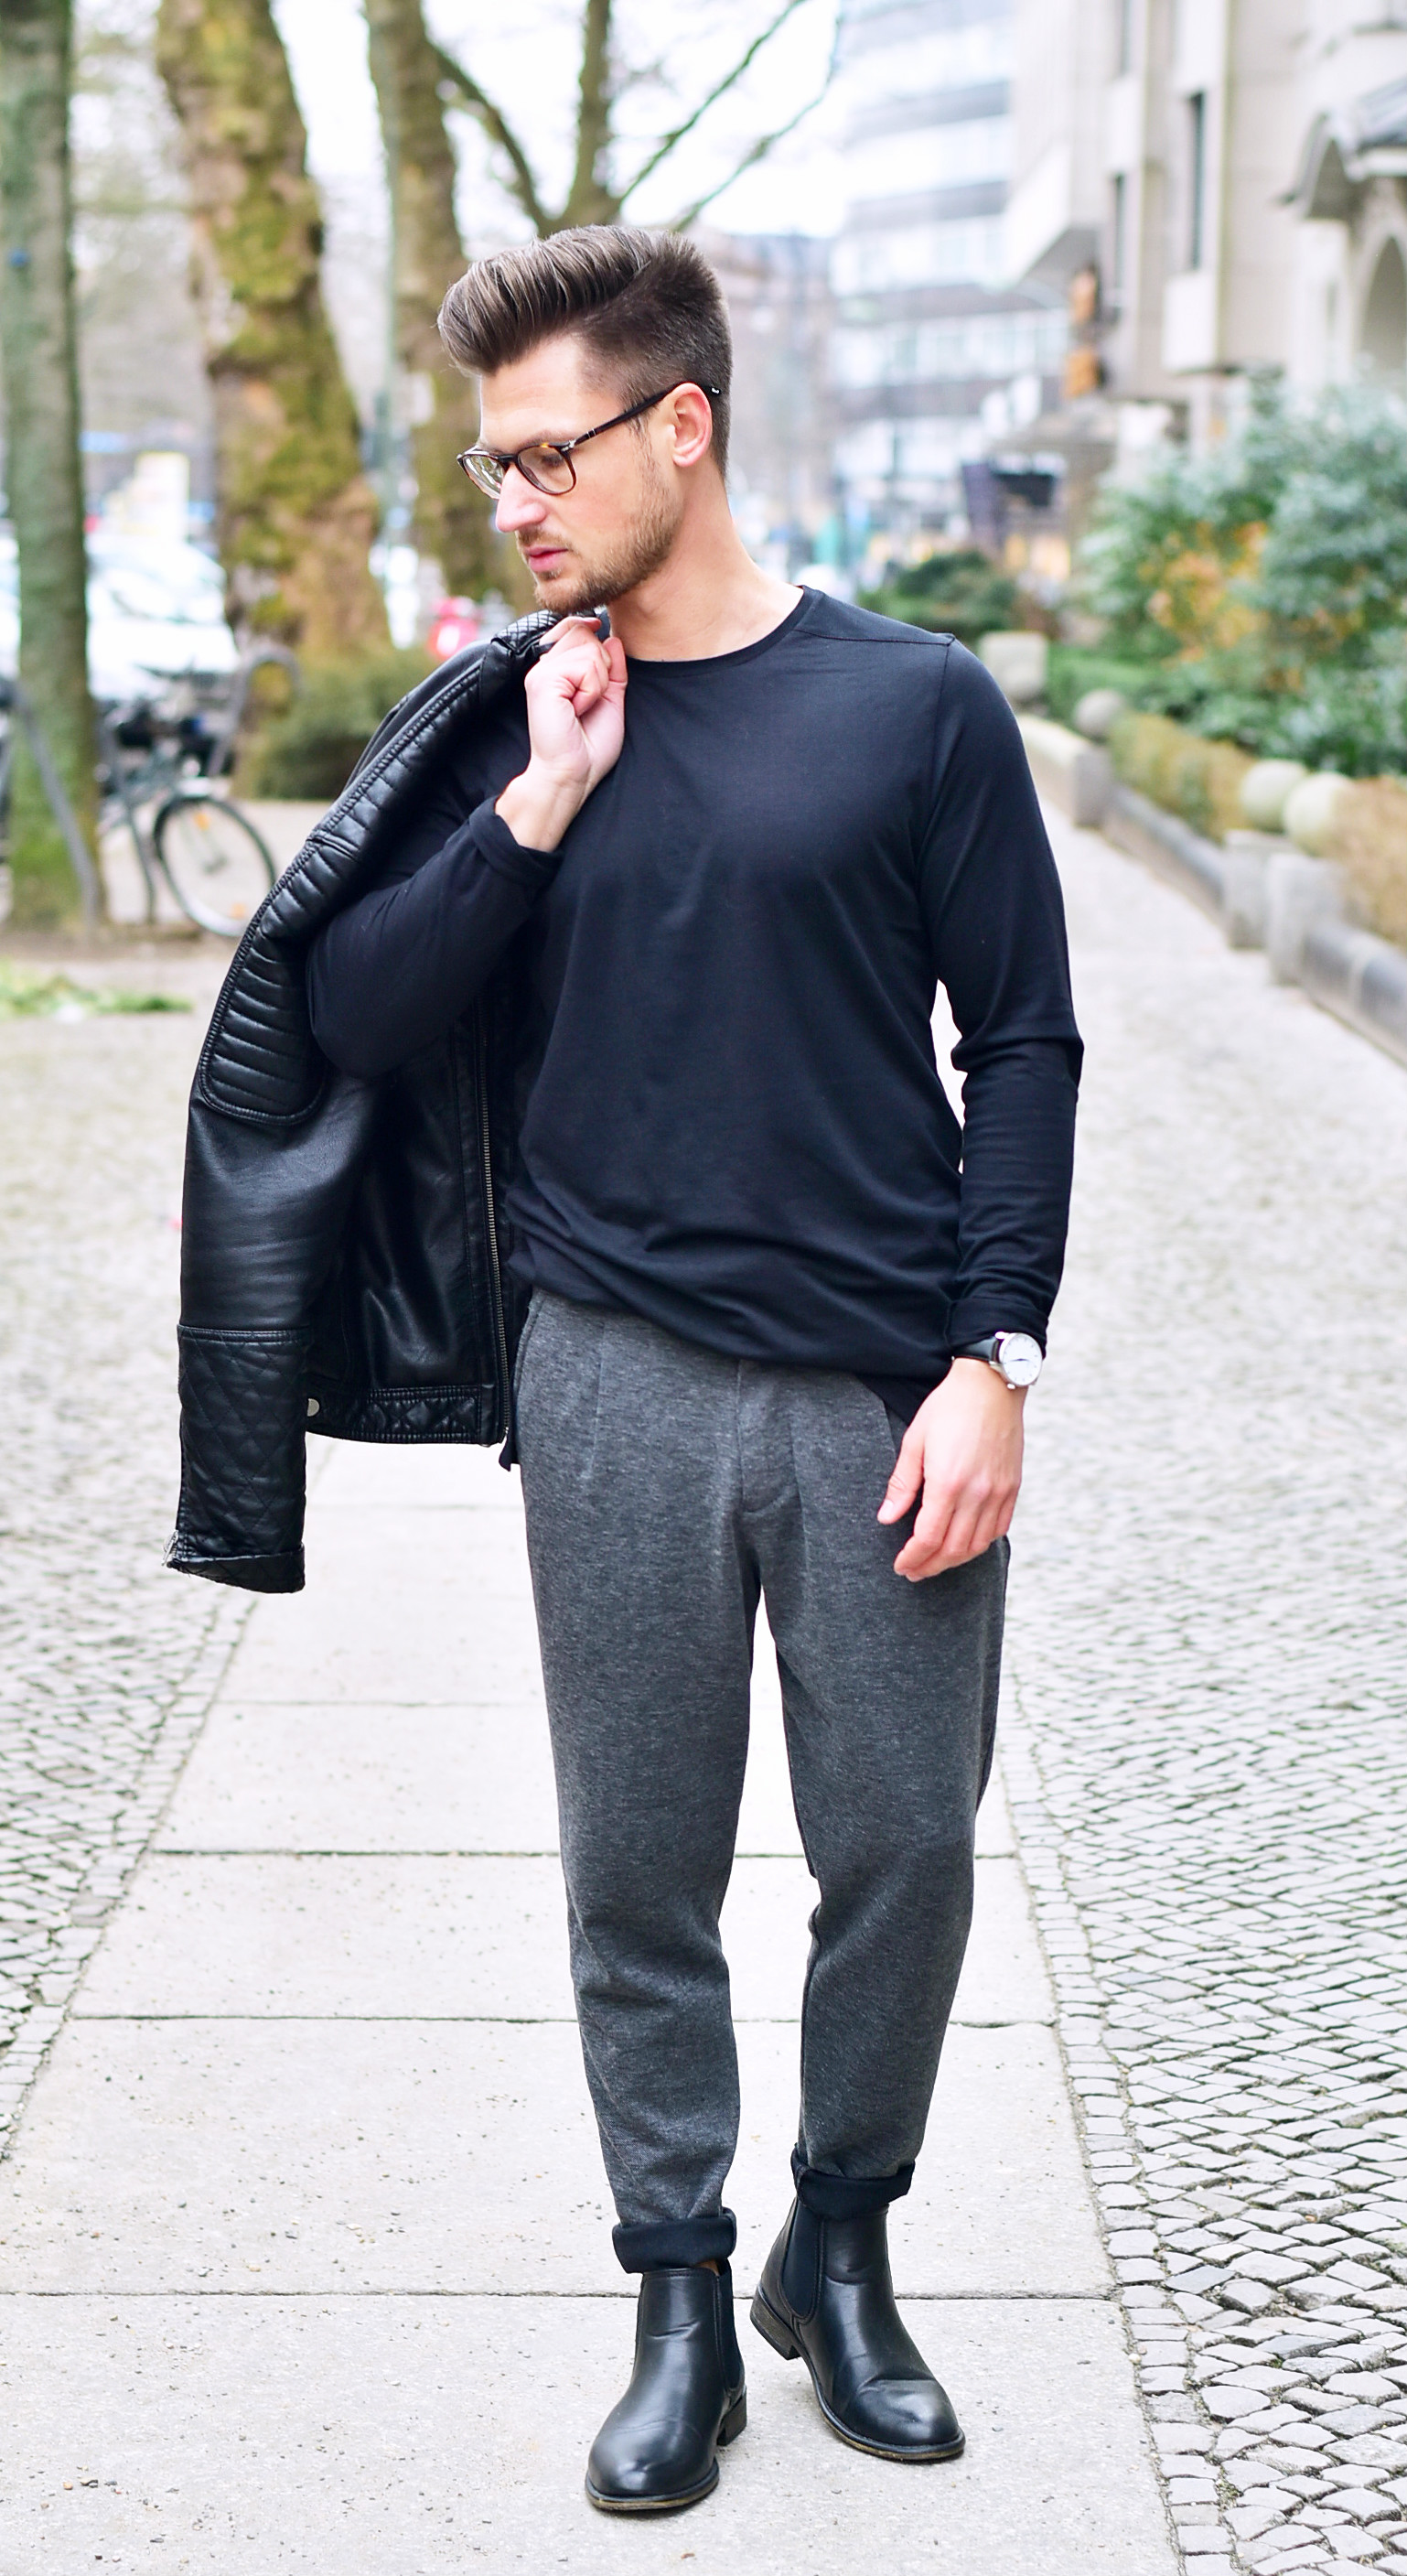 Tommeezjerry-Styleblog-Männerblog-Modeblog-Berlin-Jacke-Hose-Uhr-Boots-Outfit-Männermode-Streetwear